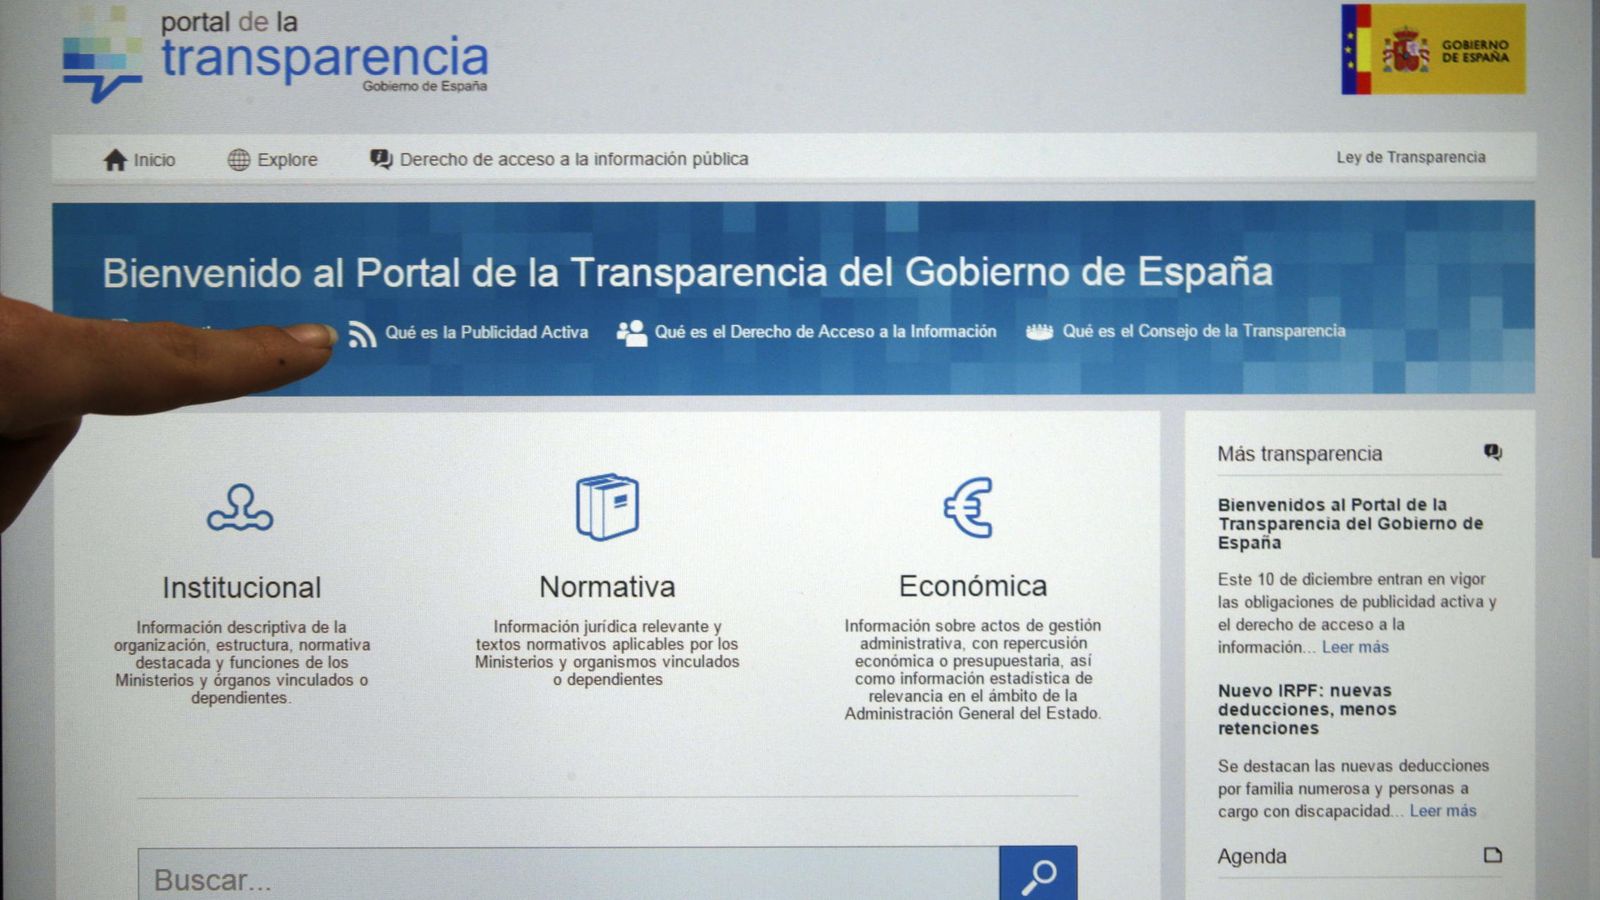 Foto: Imagen del Portal de la Transparencia, creado en diciembre de 2014 por el Gobierno de Mariano Rajoy. (Efe)